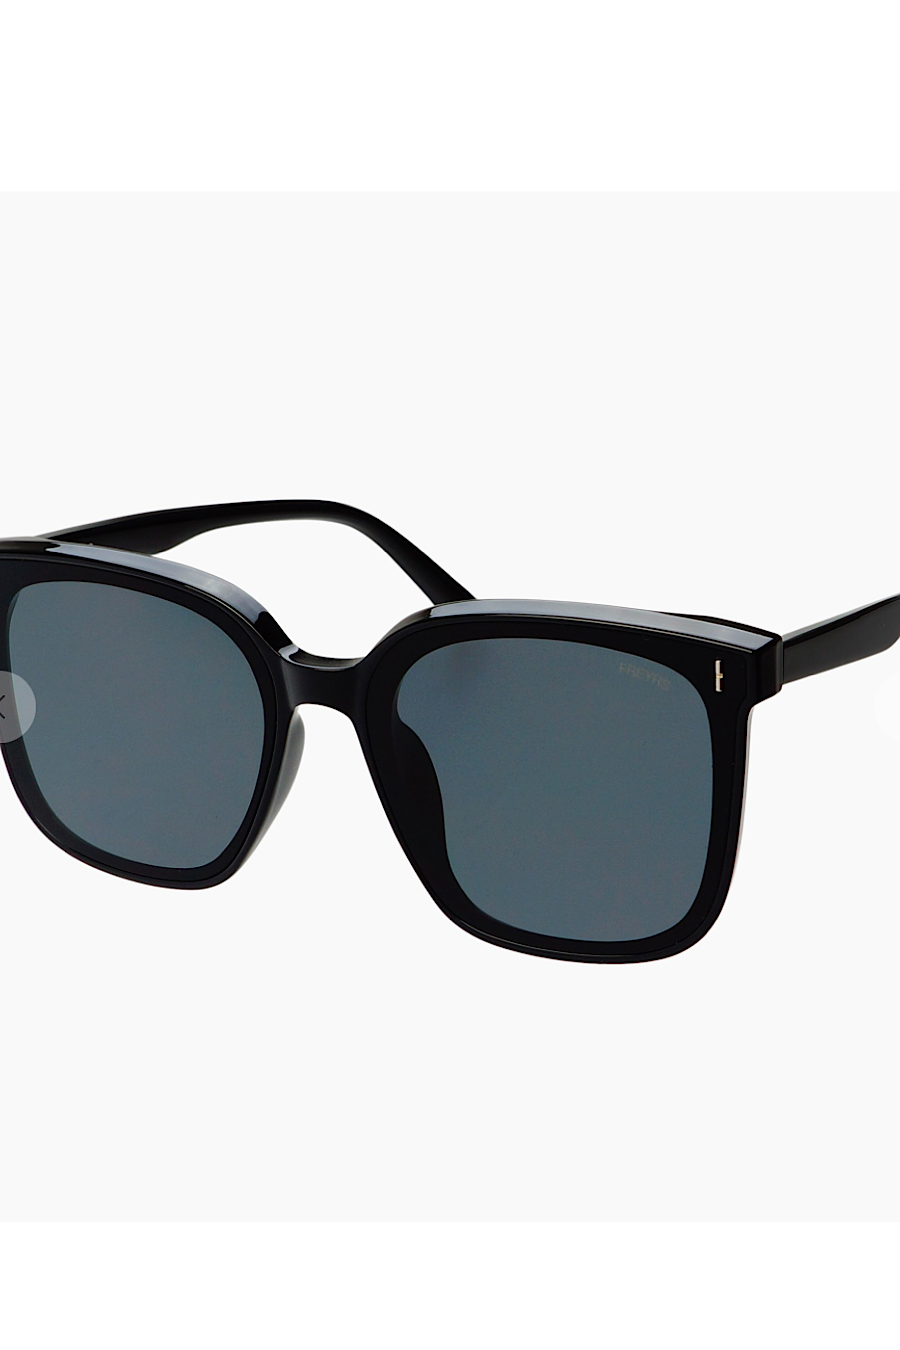 Freyrs Aspen Sunglasses Black